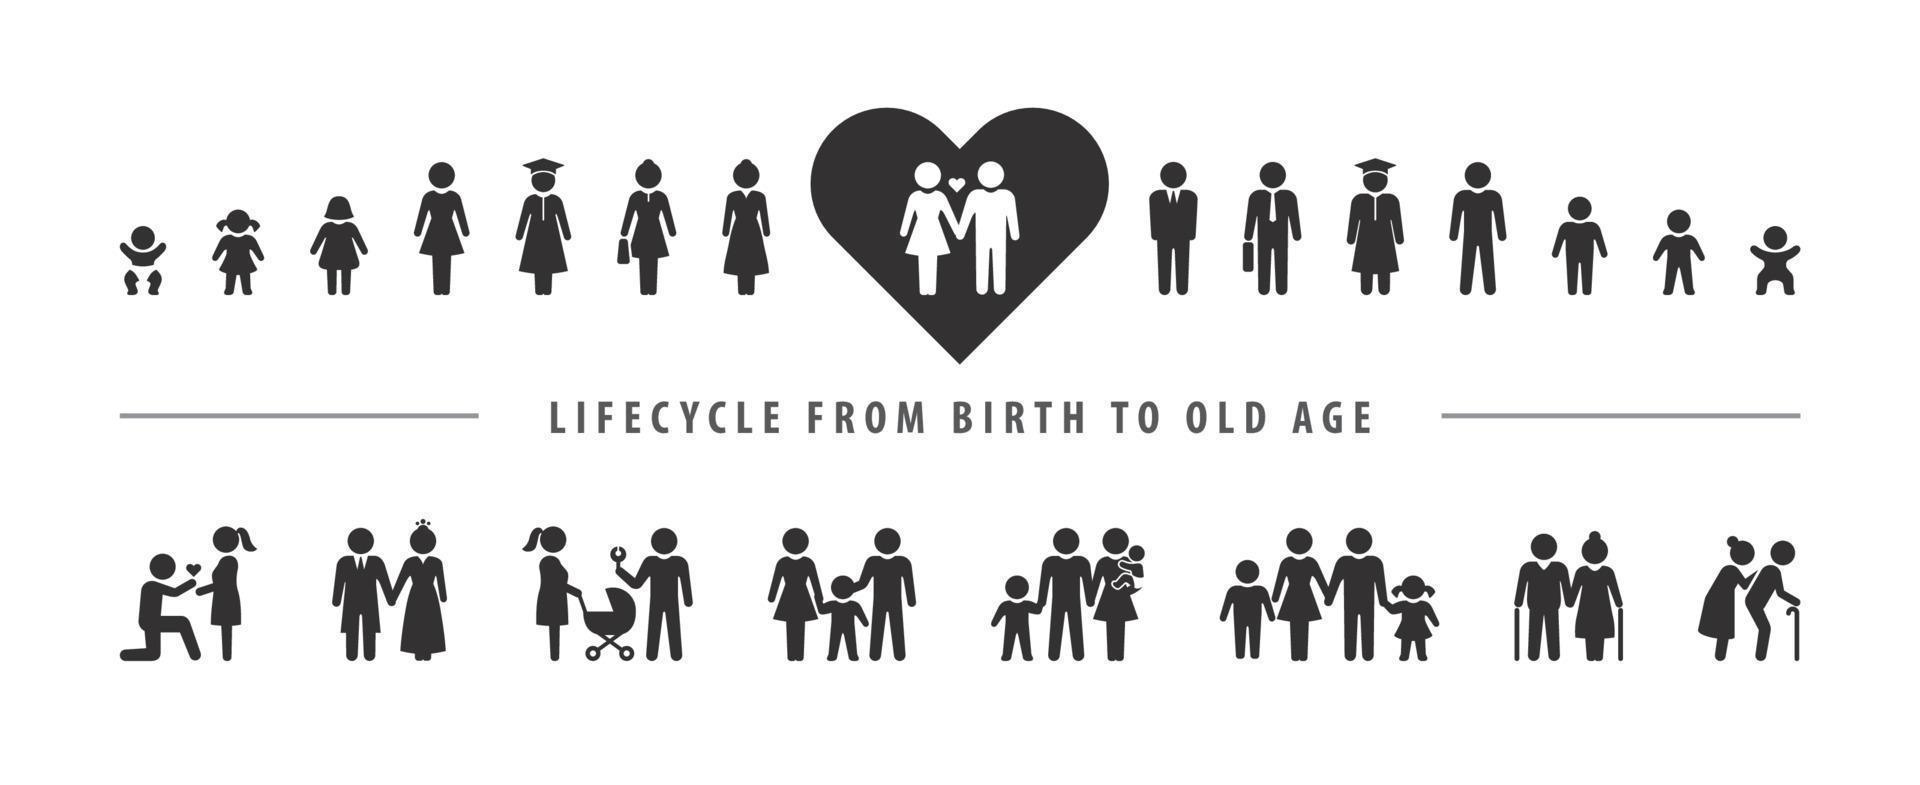 Lebenszyklus und Alterungsprozess. Vektor-Icon-Set, Person, die vom Baby bis ins hohe Alter aufwächst. vektor